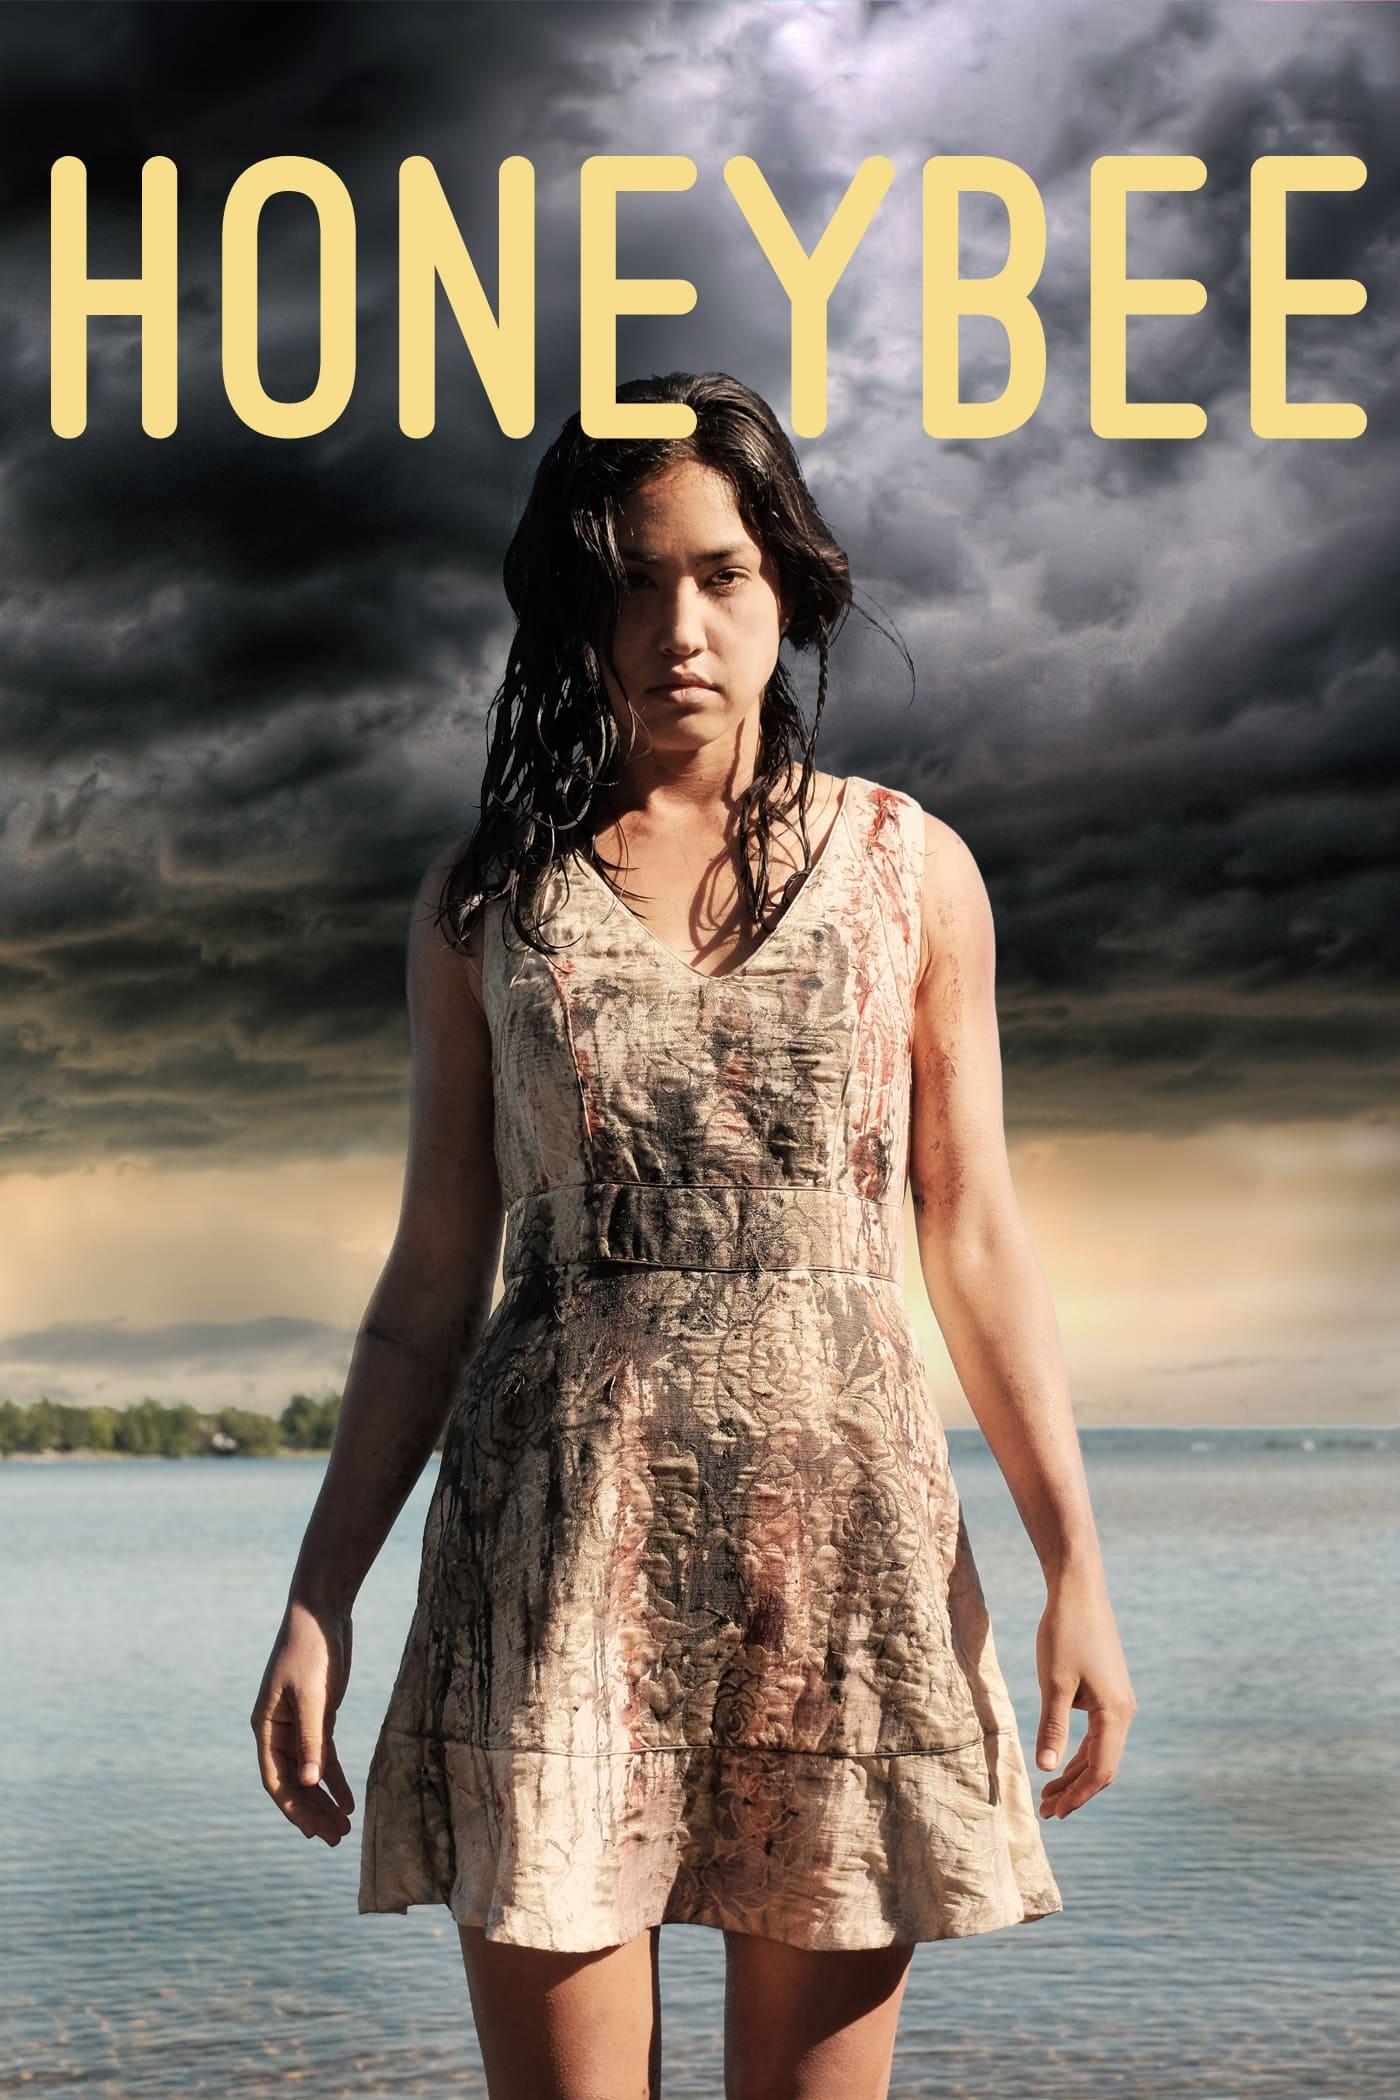 HoneyBee poster